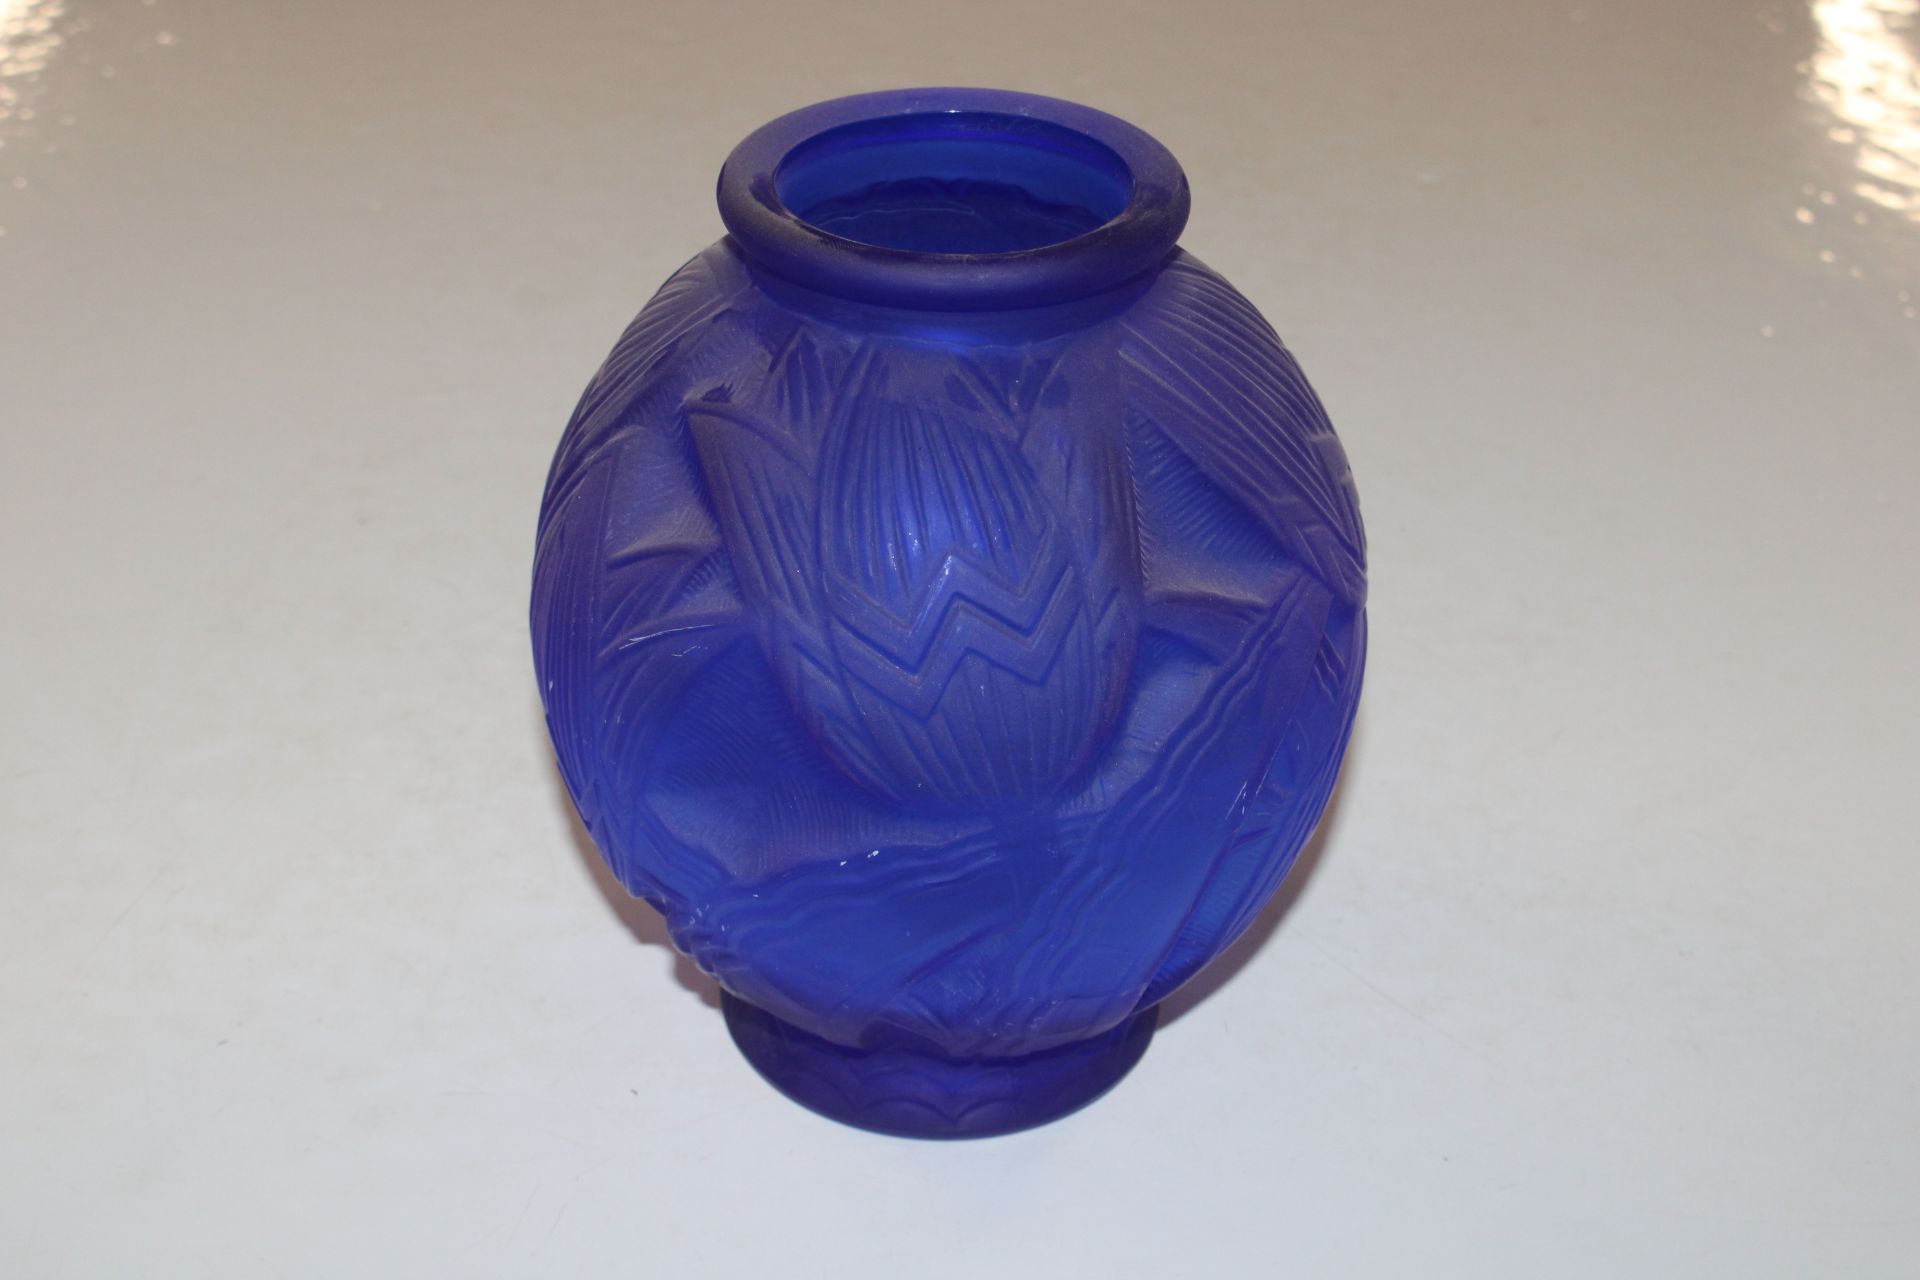 An Art Deco style blue glass vase, 20cm